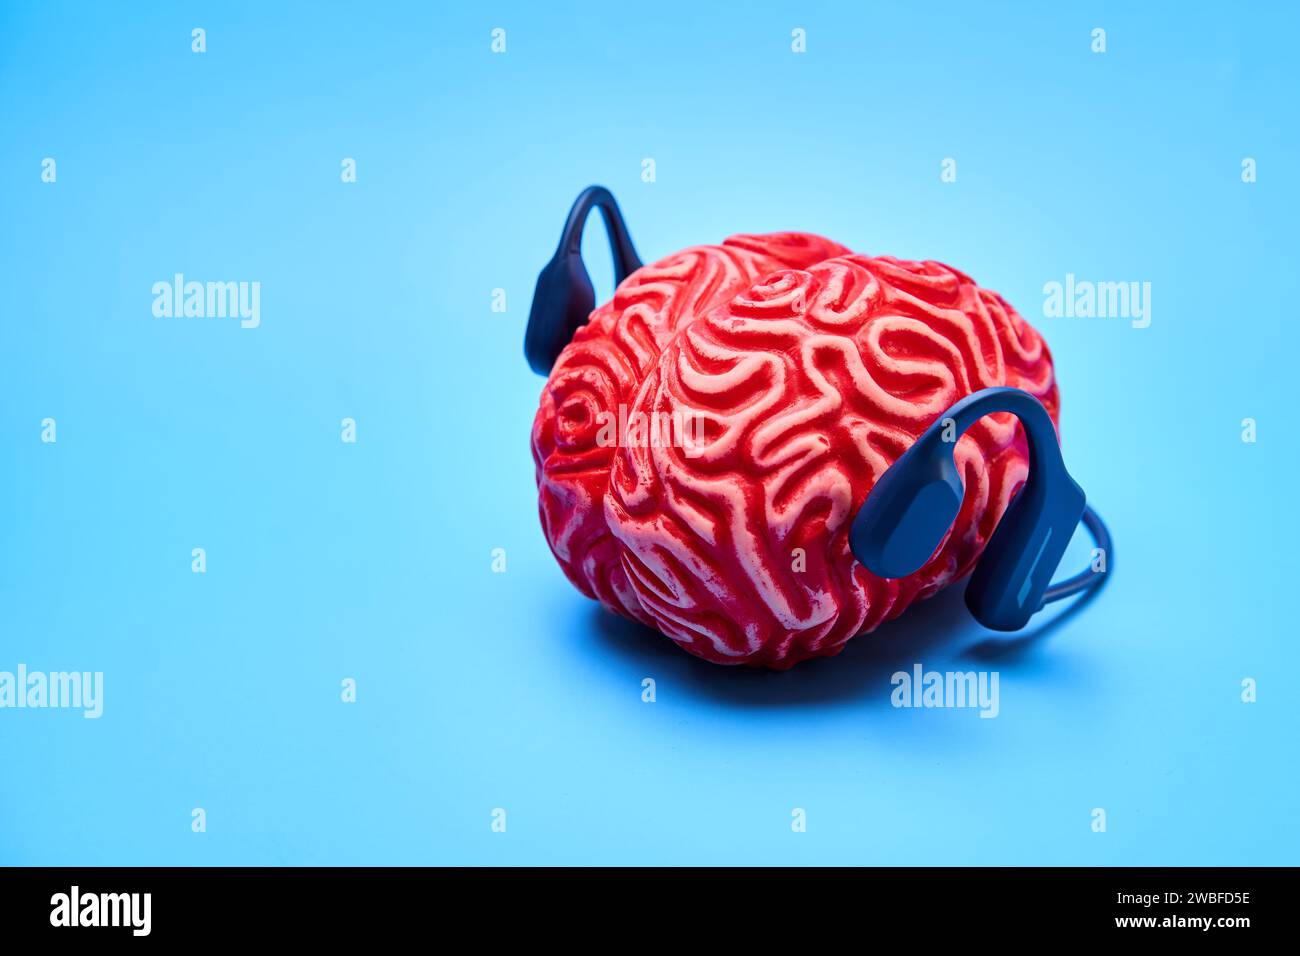 Cerebro de goma rojo con auriculares en una superficie azul. Concepto de descanso cerebral. Foto de stock